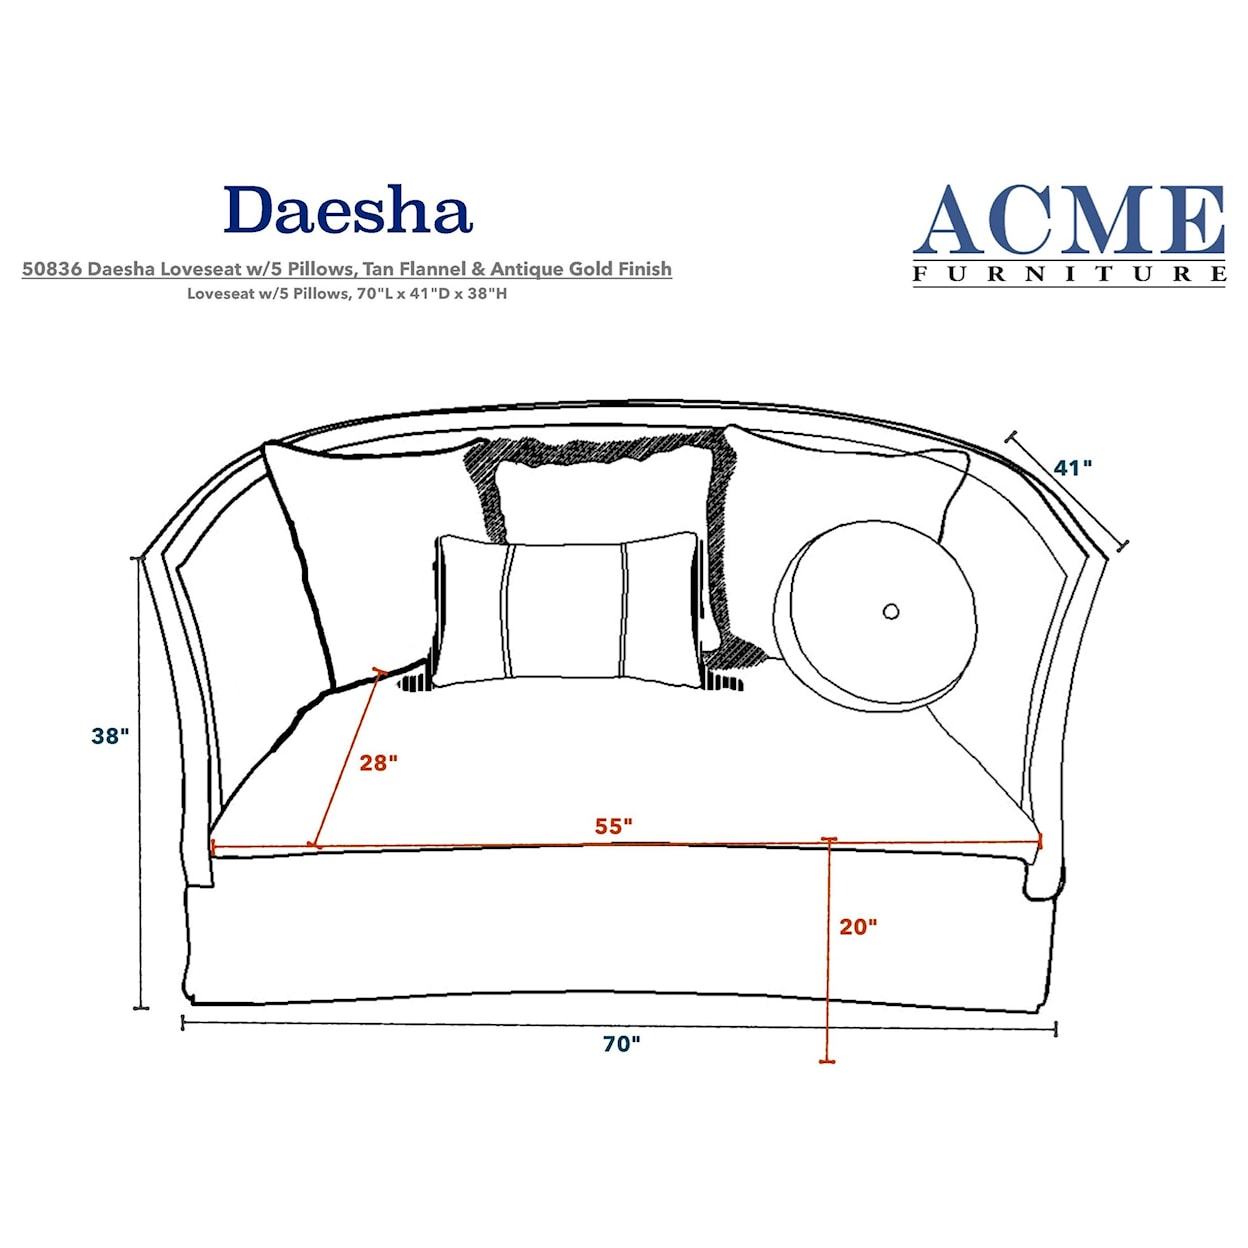 Acme Furniture Daesha Loveseat w/5 Pillows